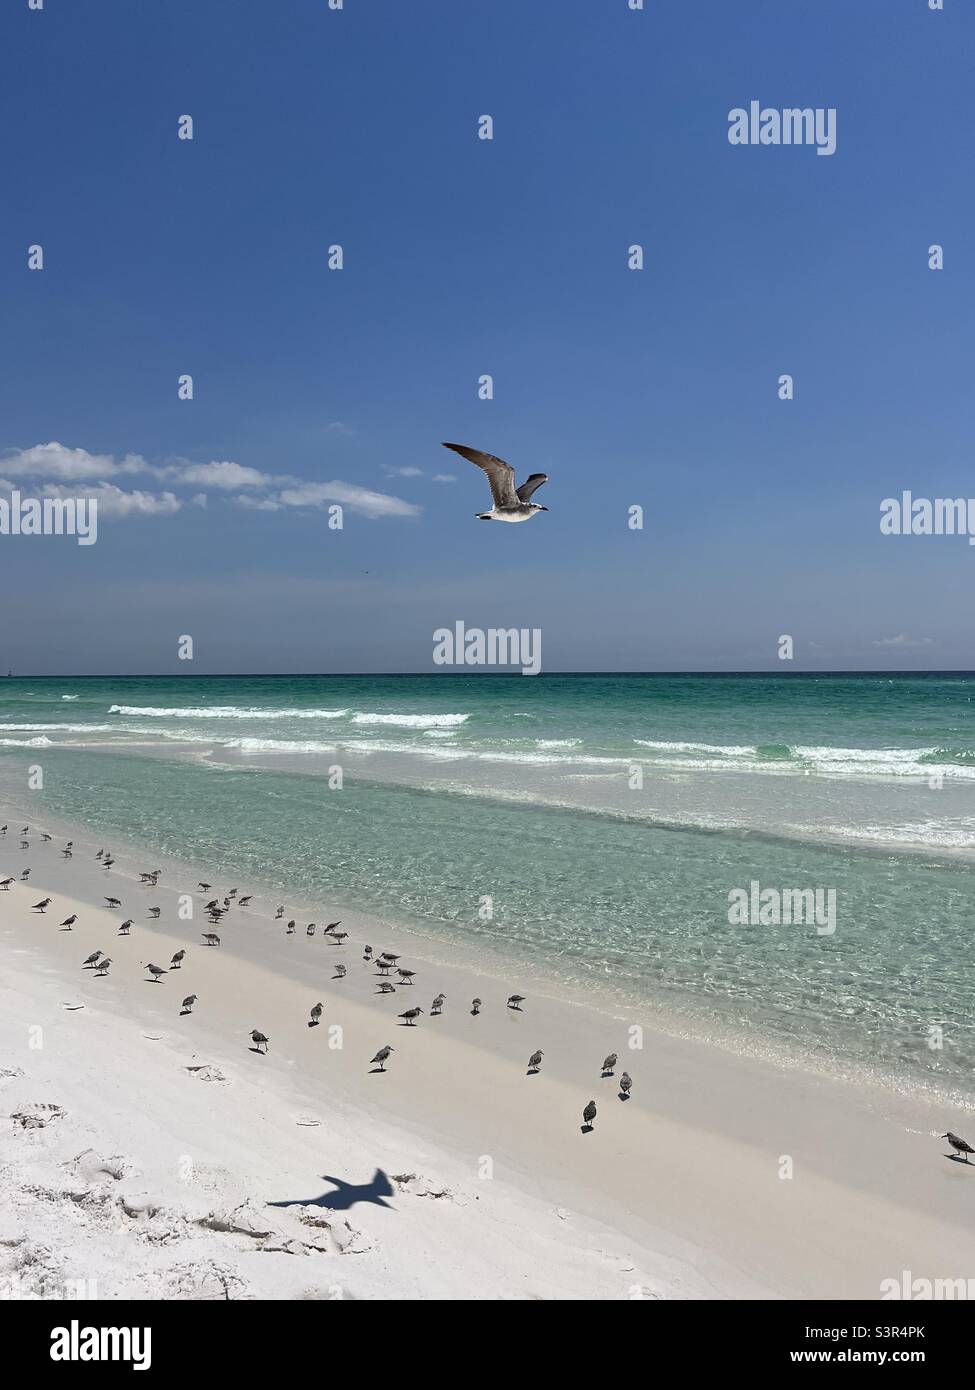 Florida Emerald Coast beach with shorebirds Stock Photo